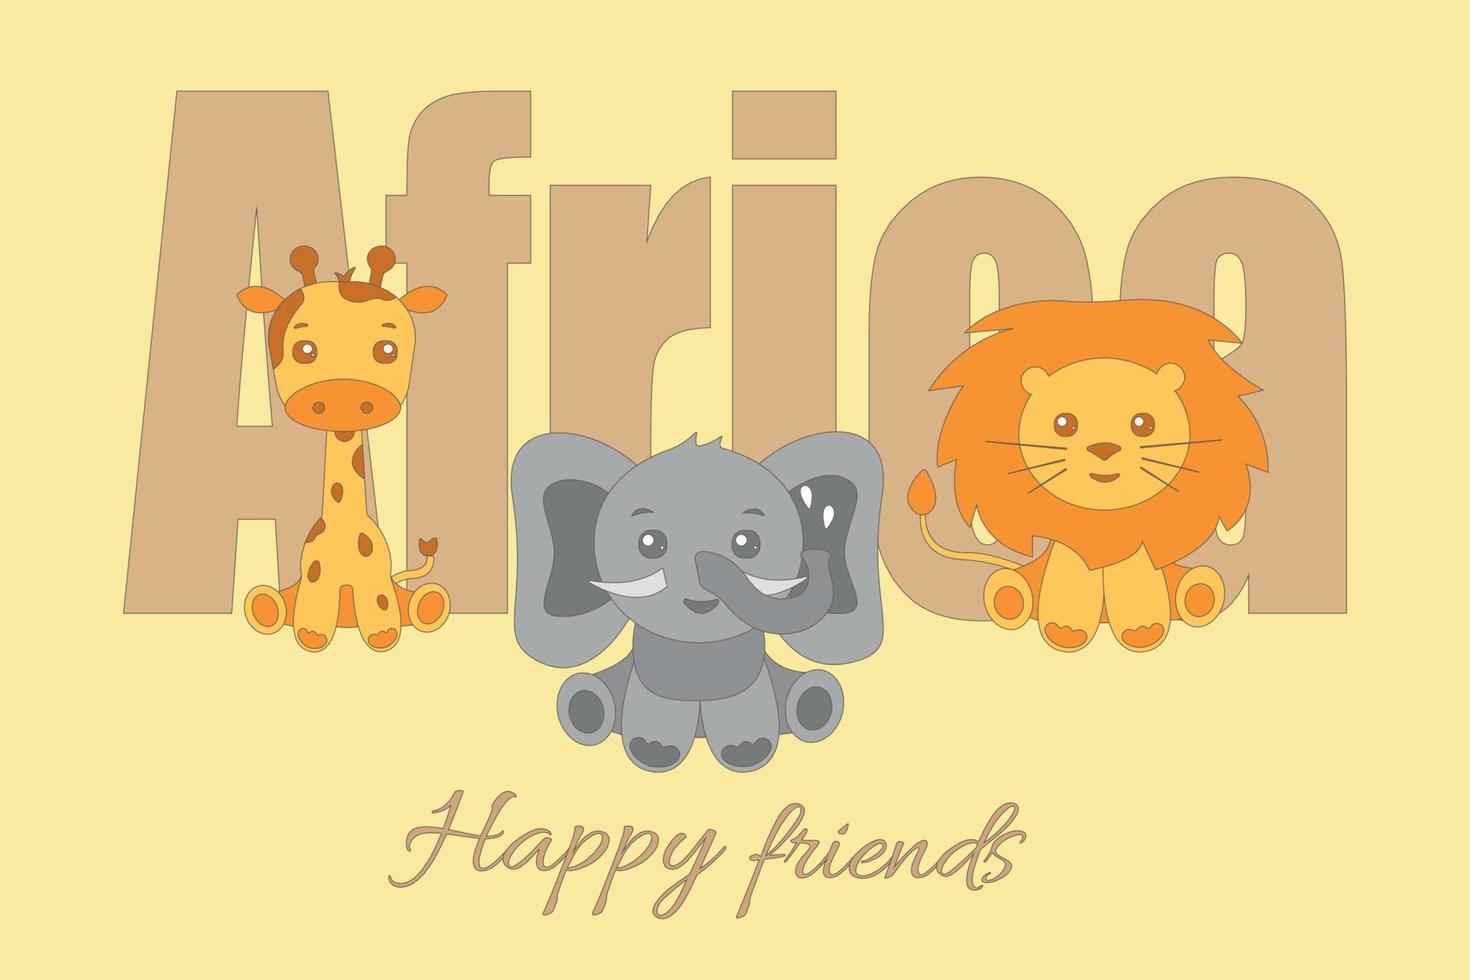 glad söt tecknad vilda afrikanska djur set - elefant, lejon och giraff vektor